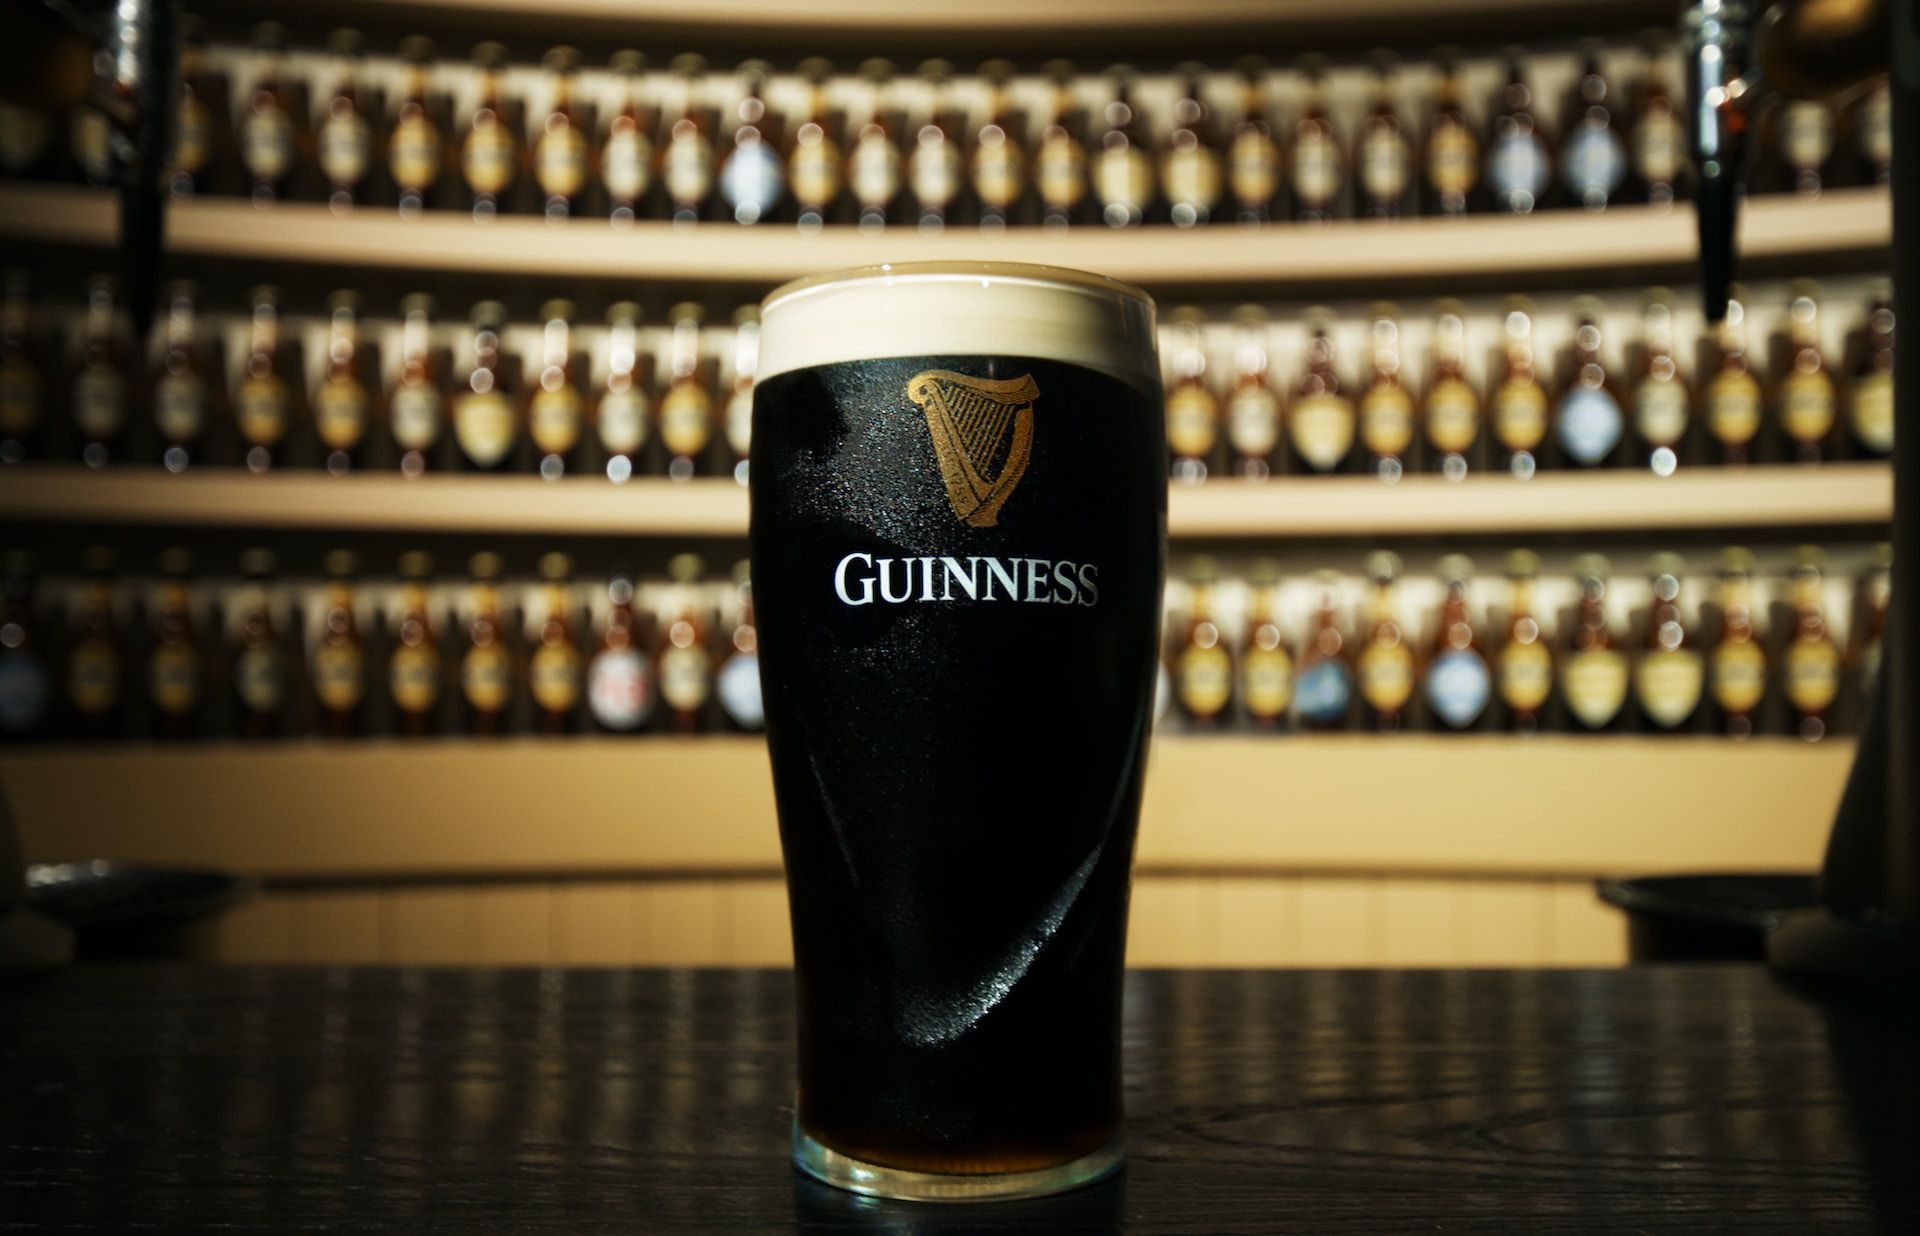 Guinness Glass in Dublin, Ireland